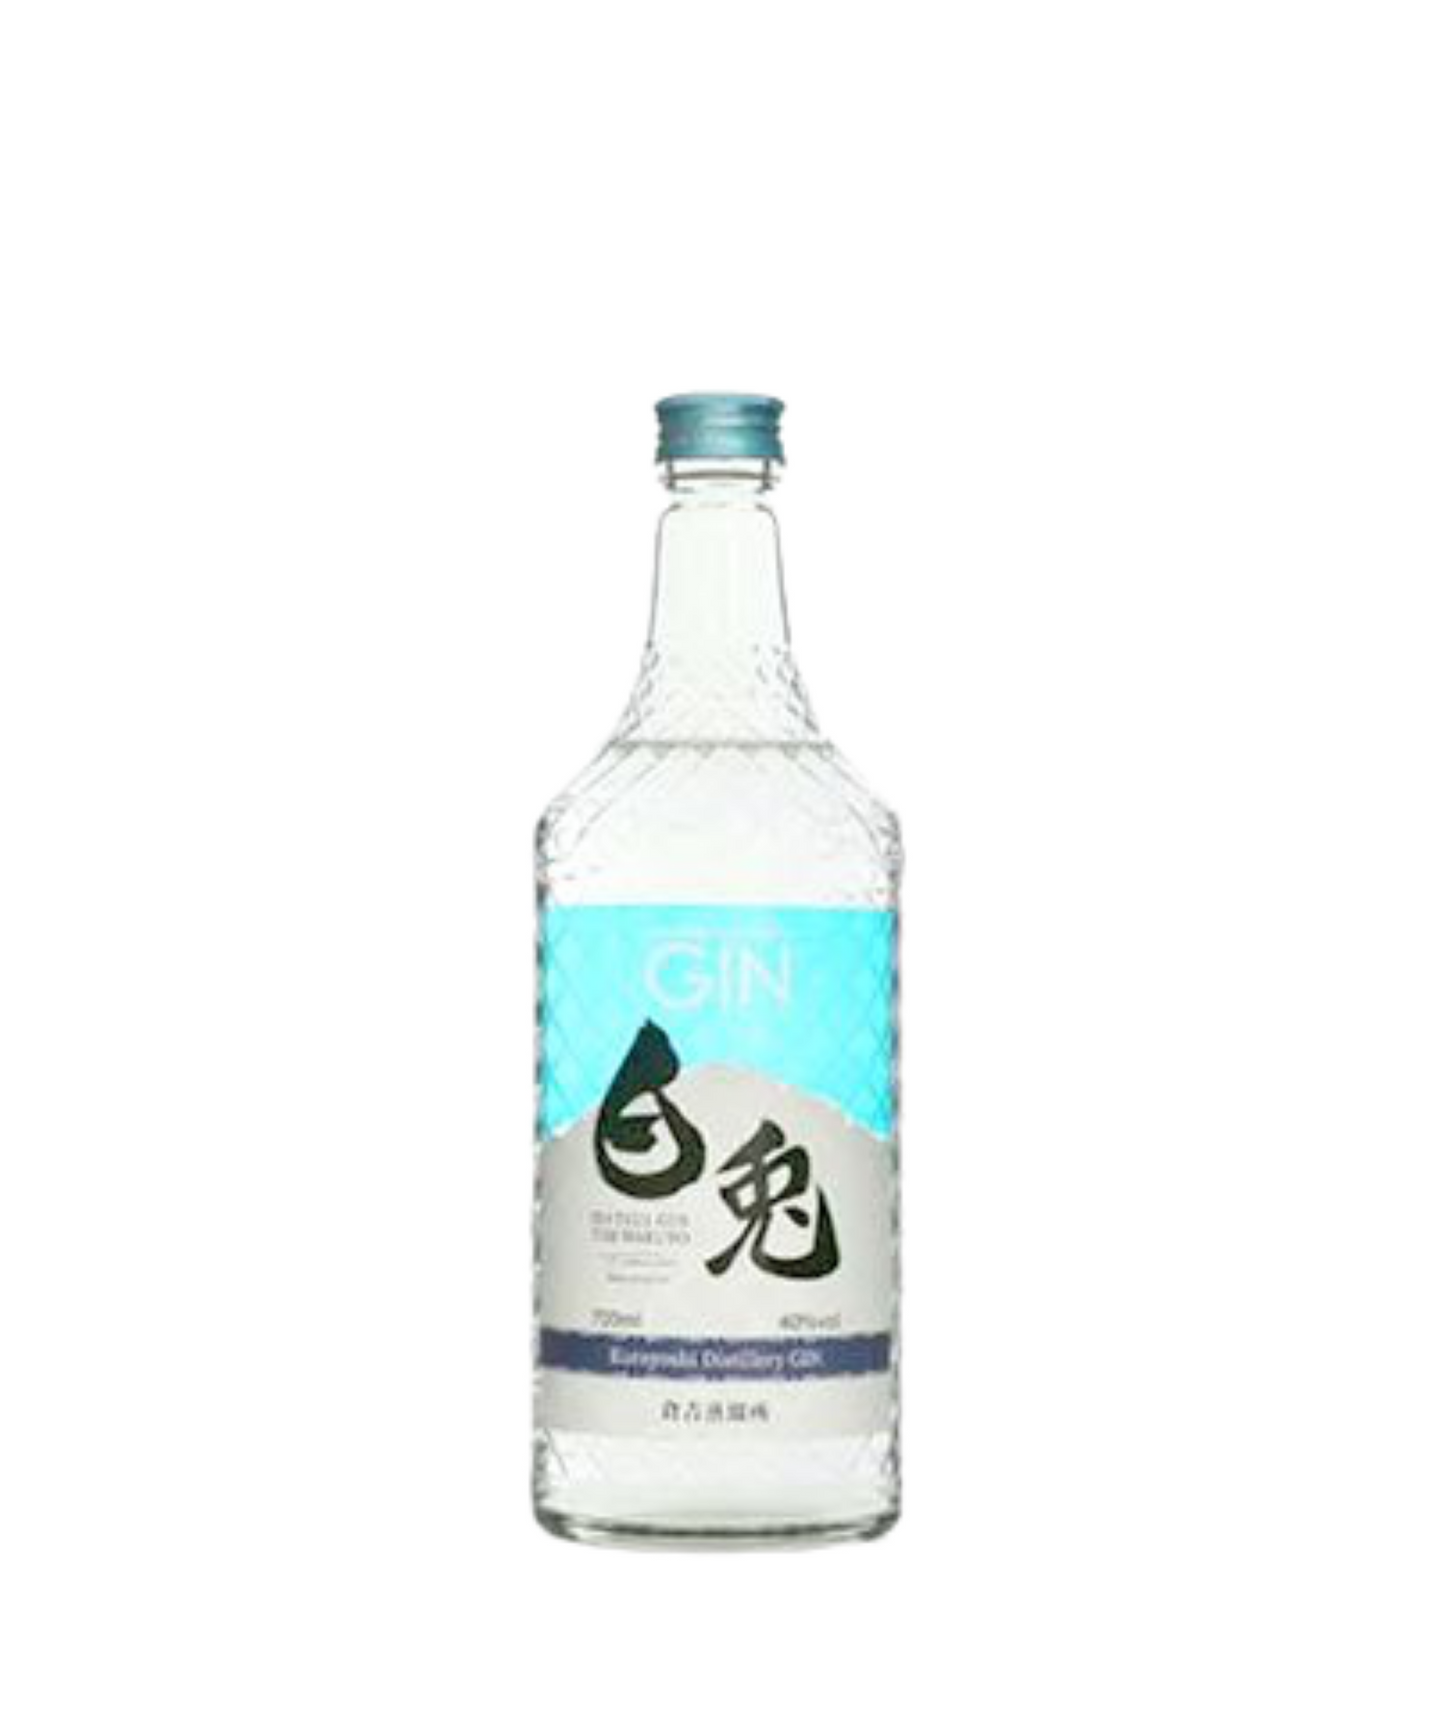 The Hakuto Gin 白兔